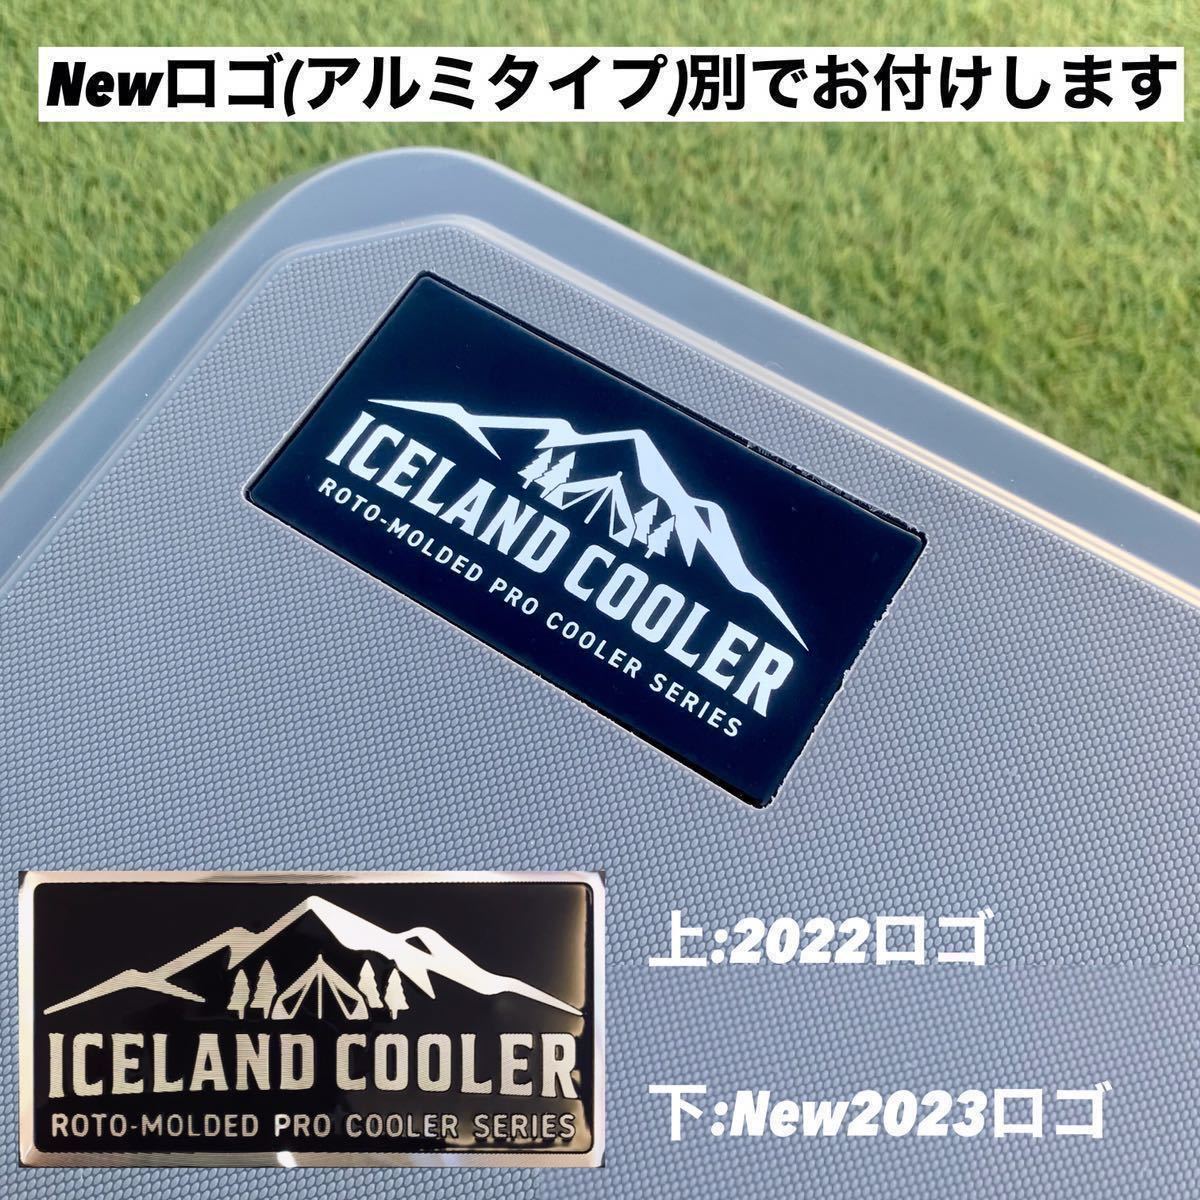 レア色 アイスランドクーラーボックス 35QT ICELAND cooler-